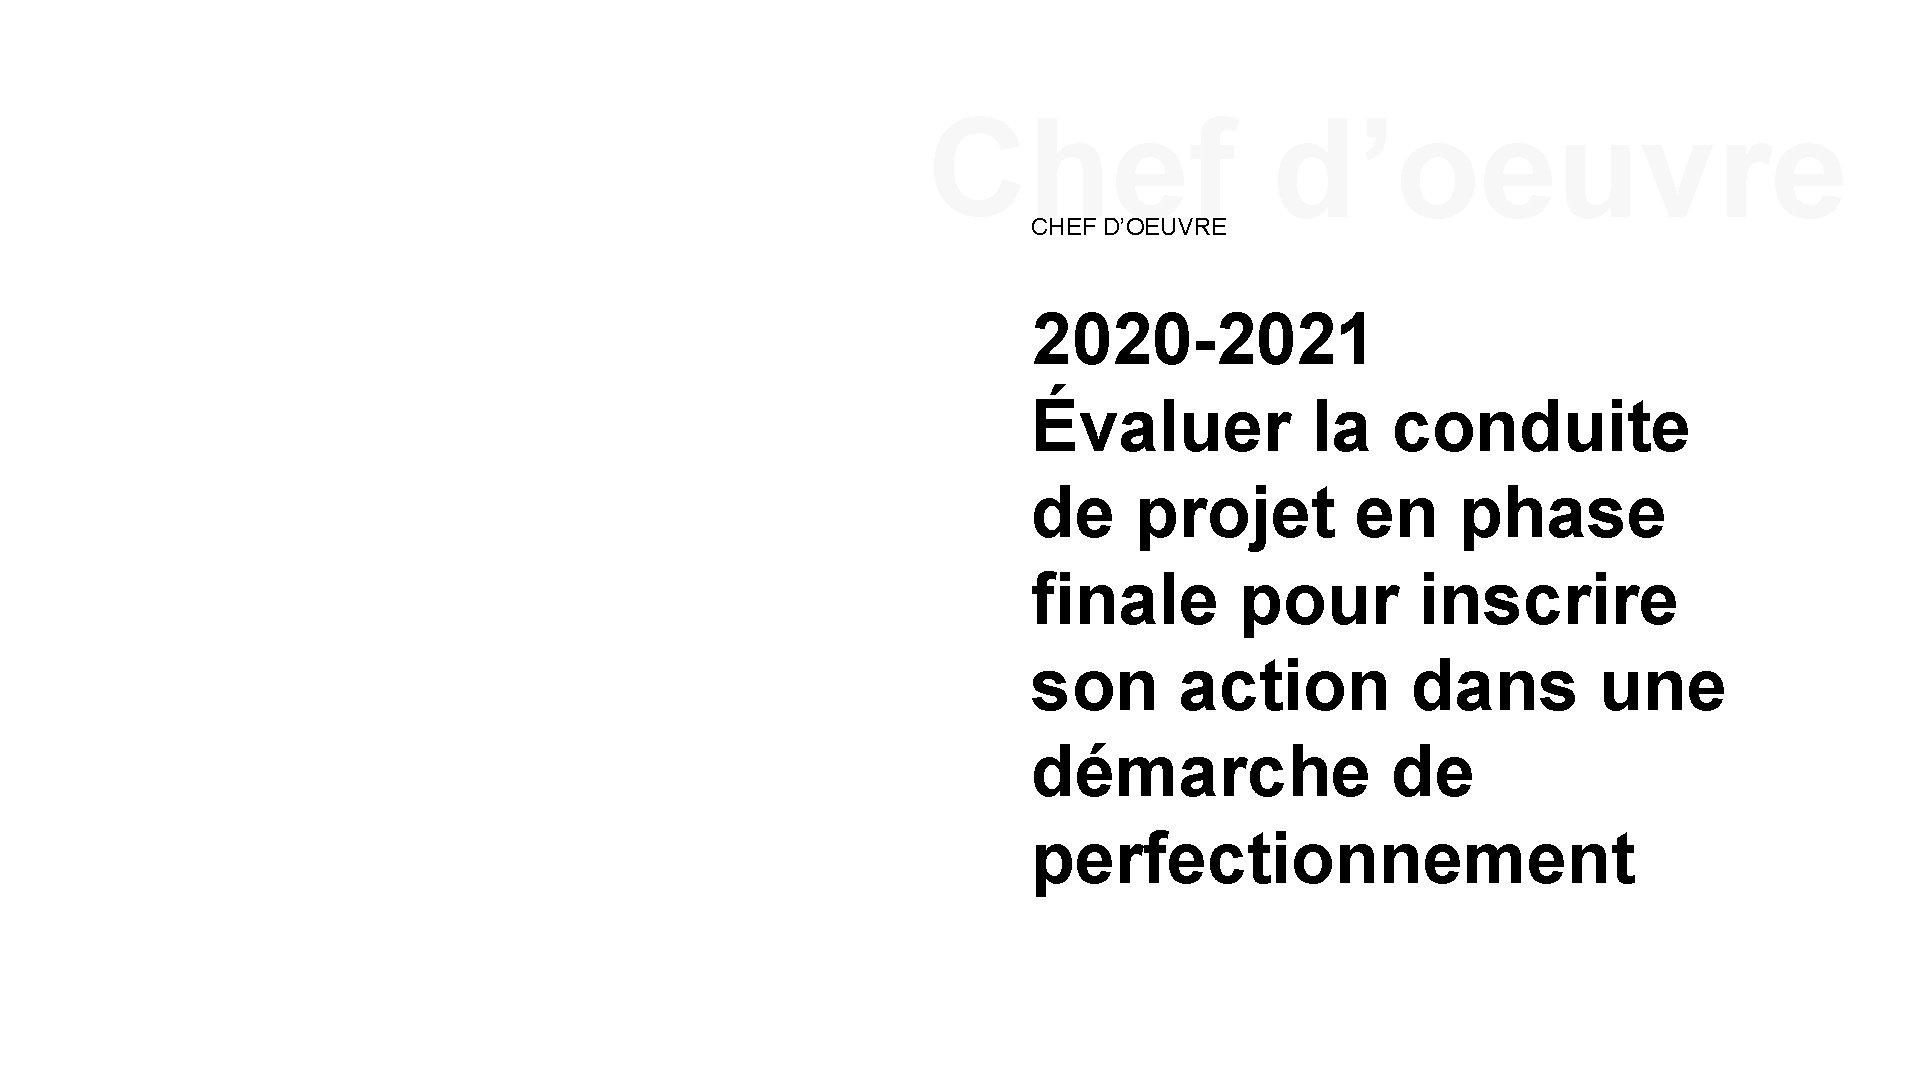 Chef d’oeuvre CHEF D’OEUVRE 2020 -2021 Évaluer la conduite de projet en phase finale